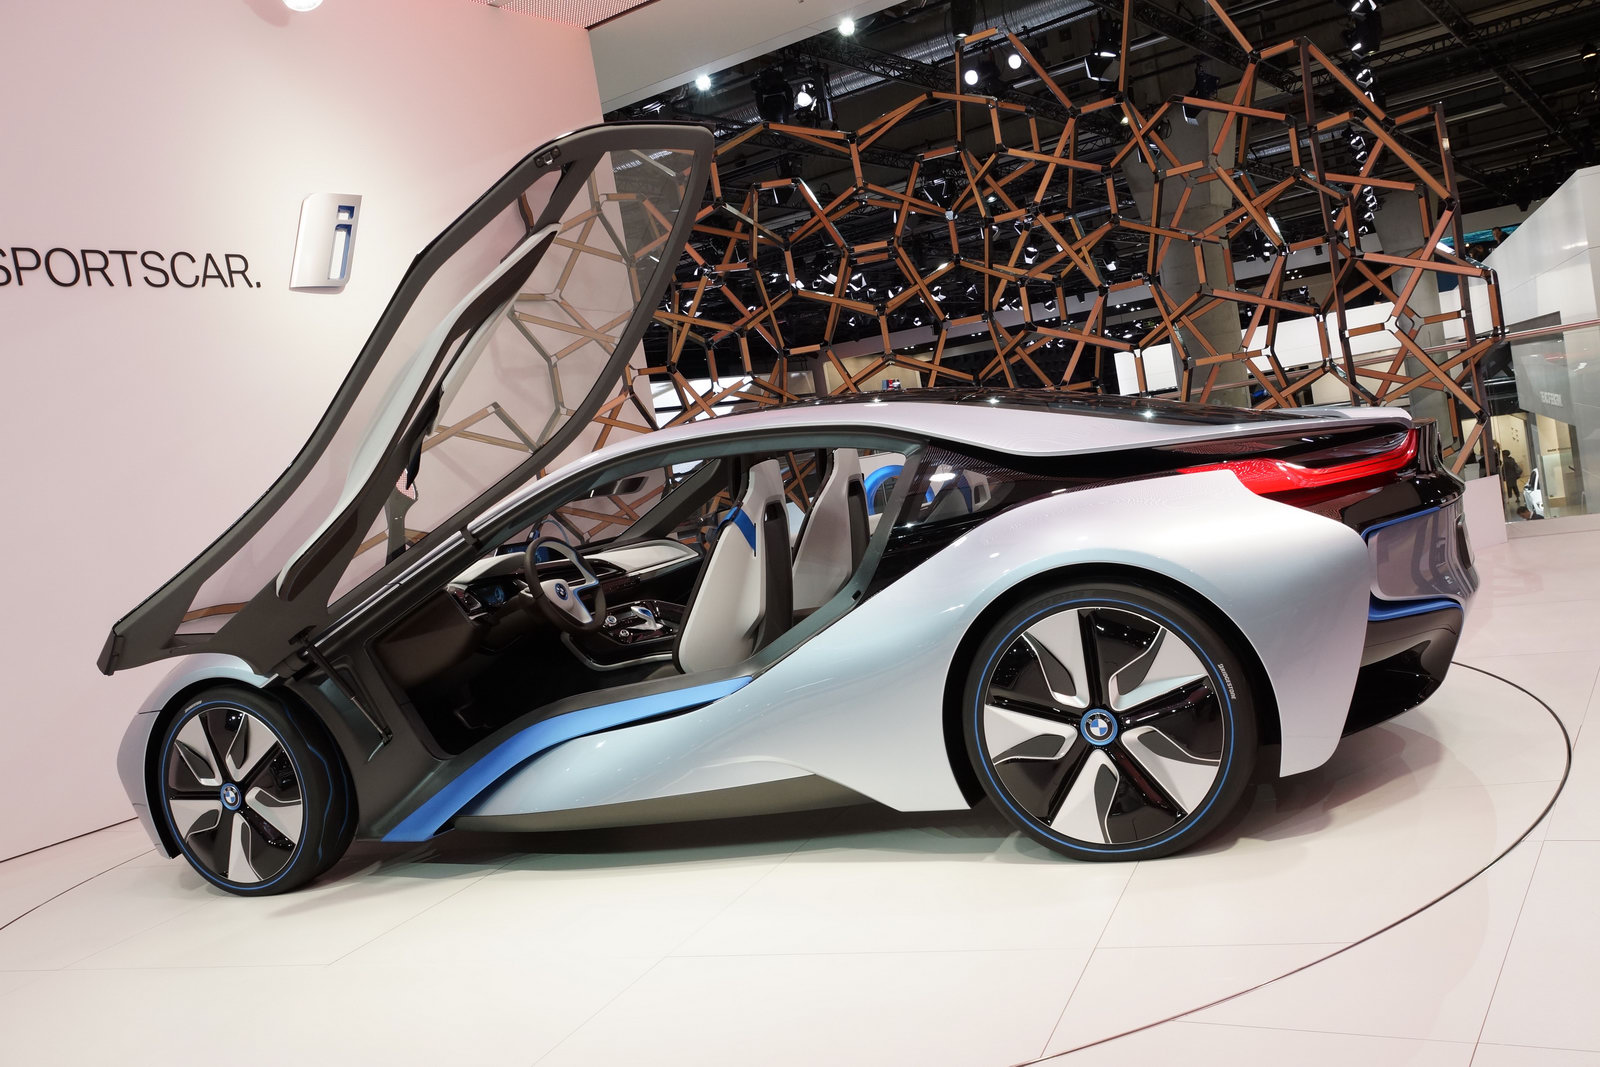 2013 BMW i8 hybrid arrives at Frankfurt